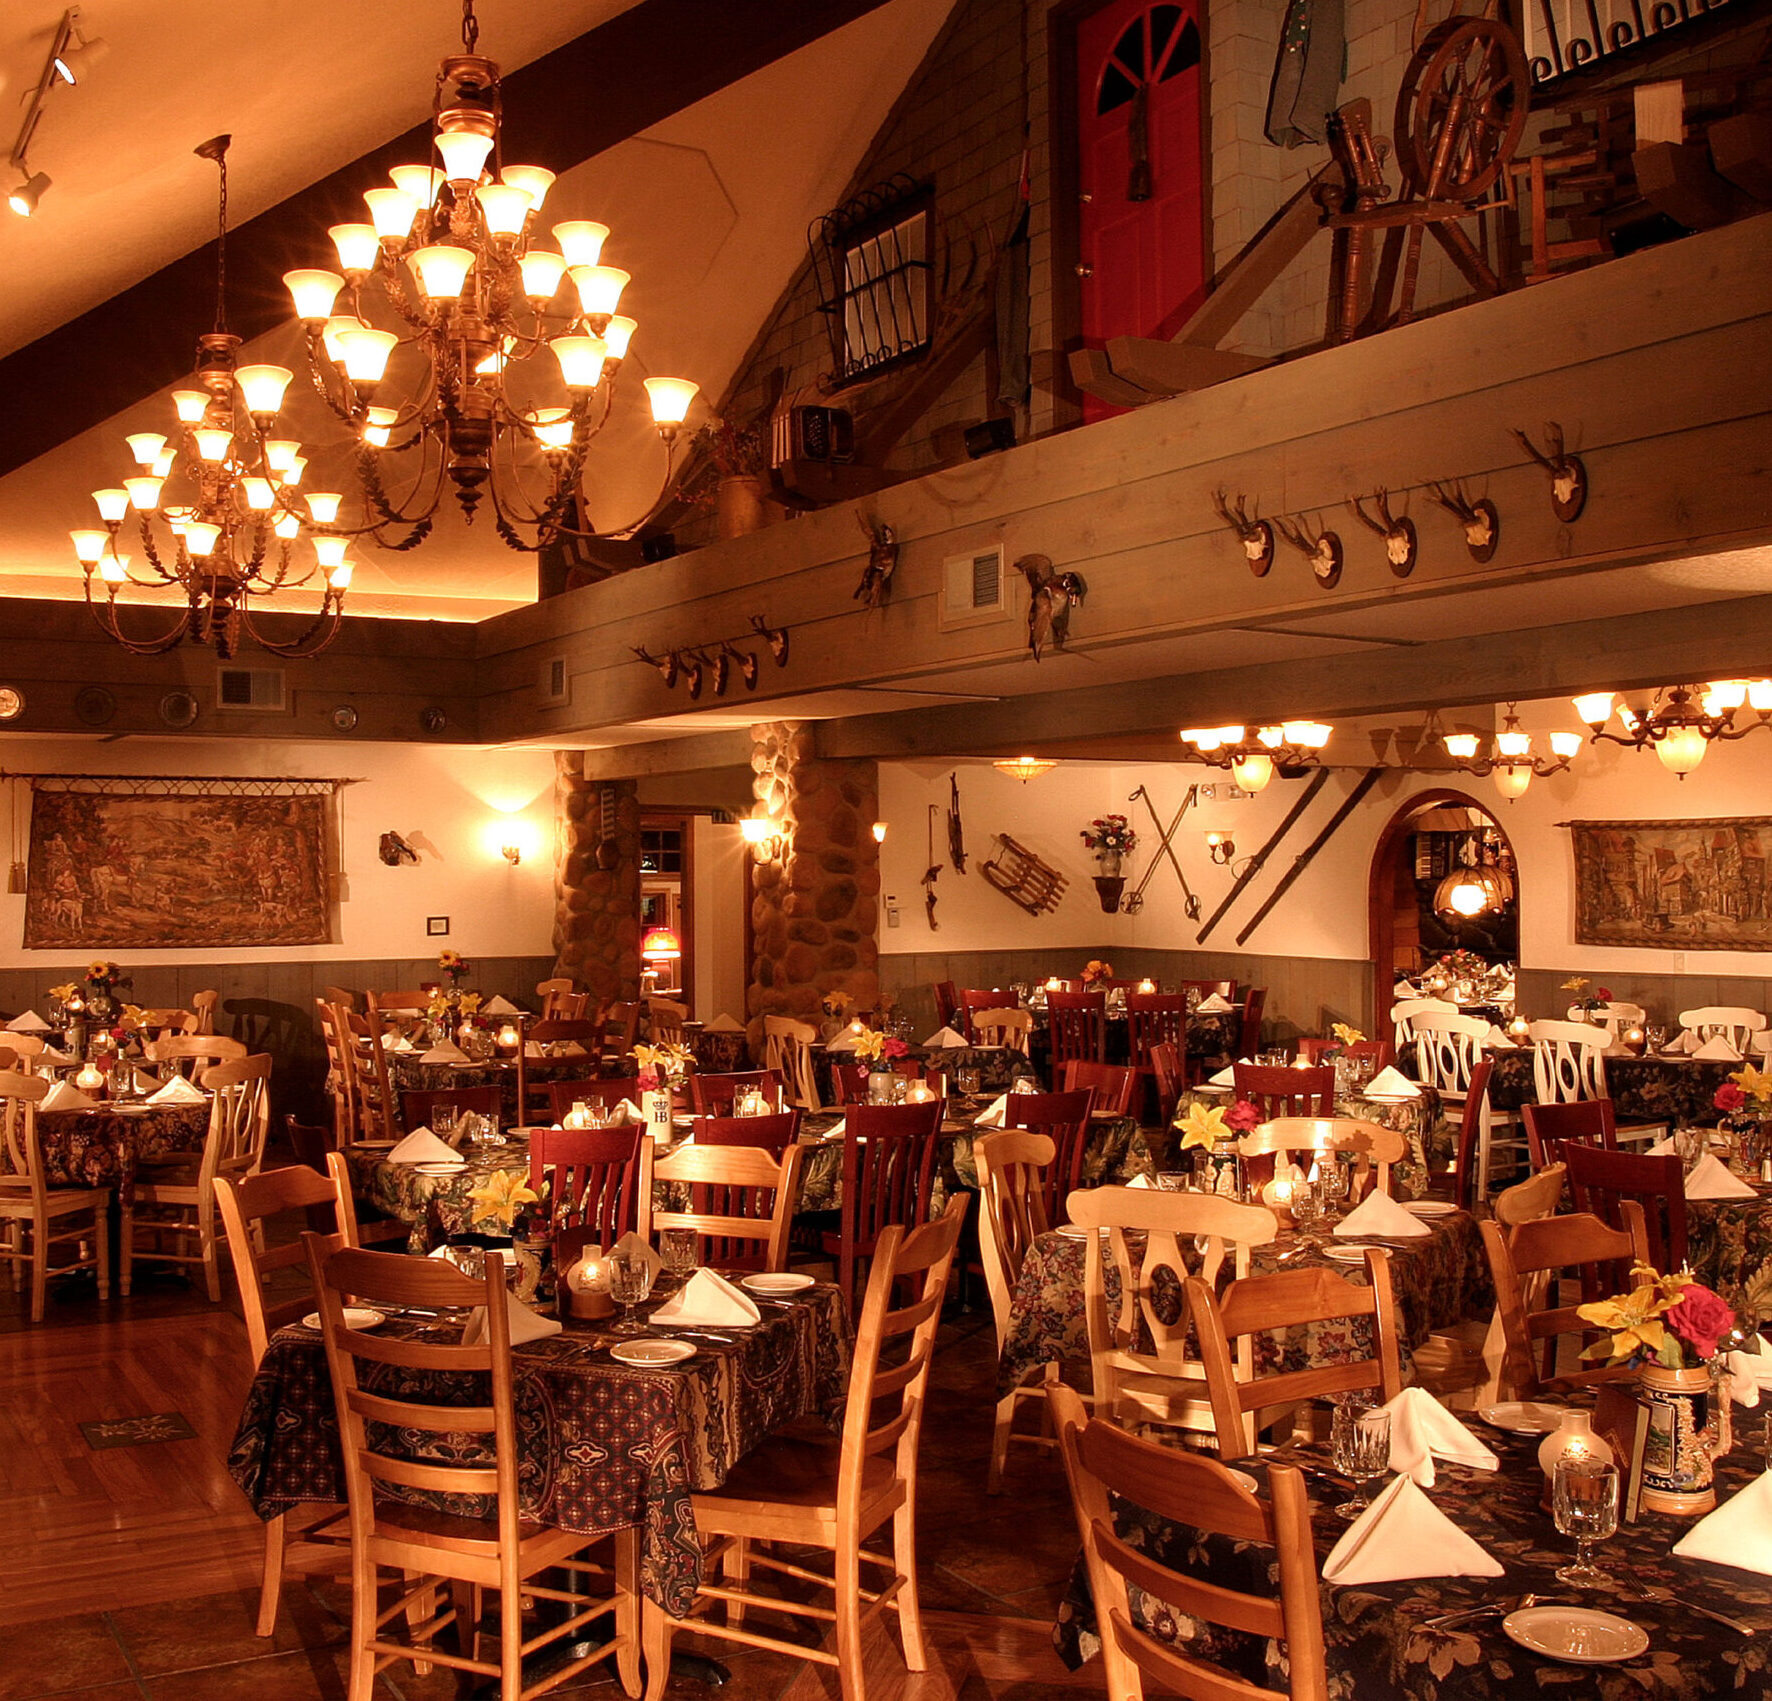 Restaurants in Colorado Springs | Colorado Springs restaurants